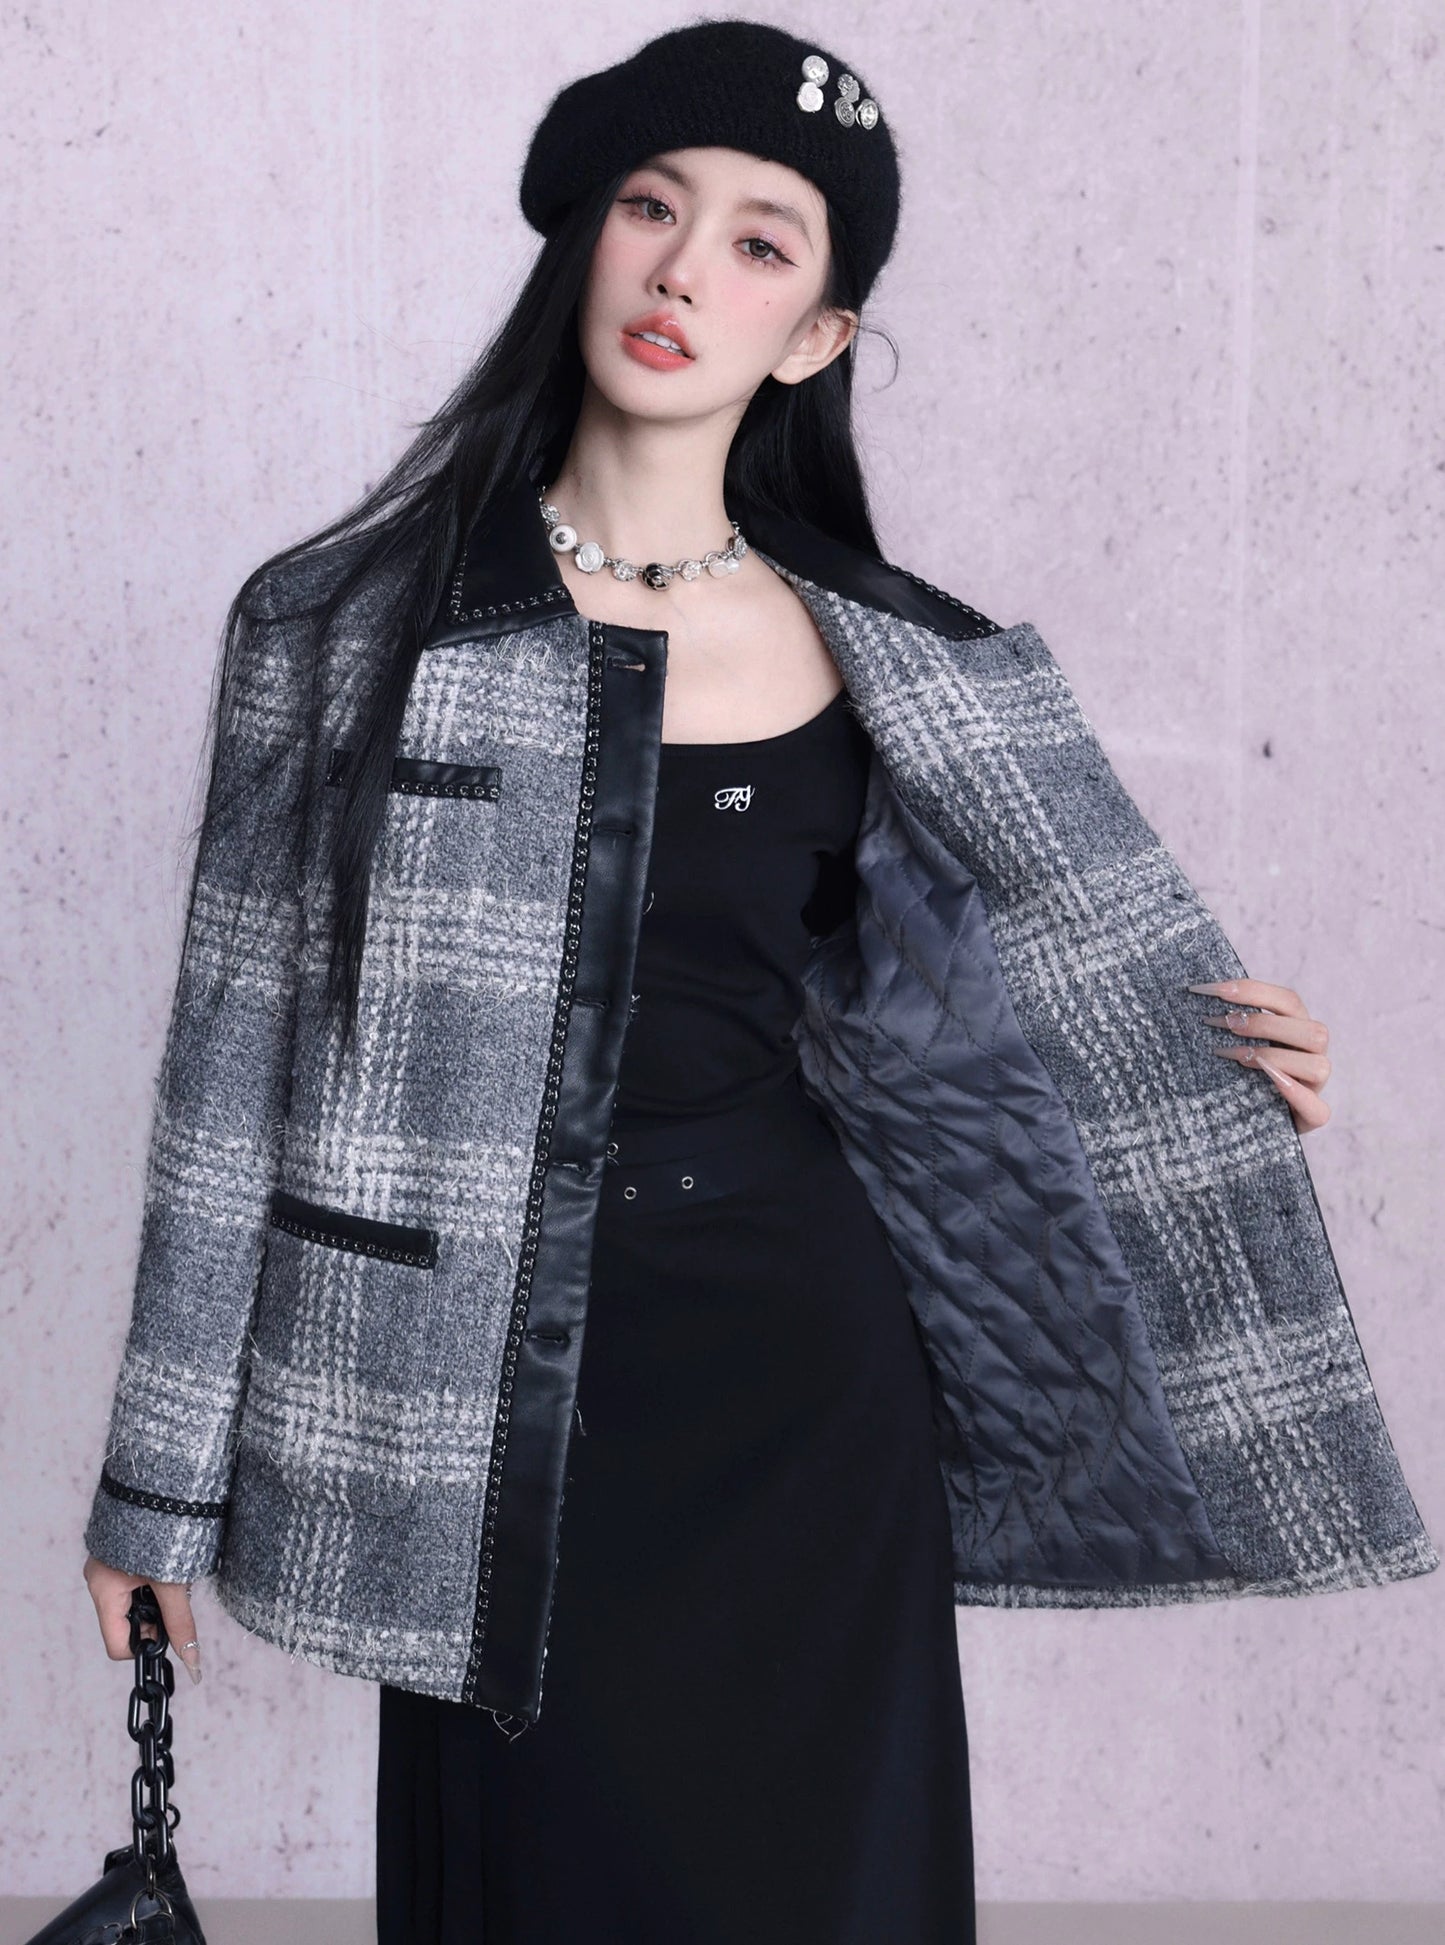 Wool Tweed Fine Small Jacket